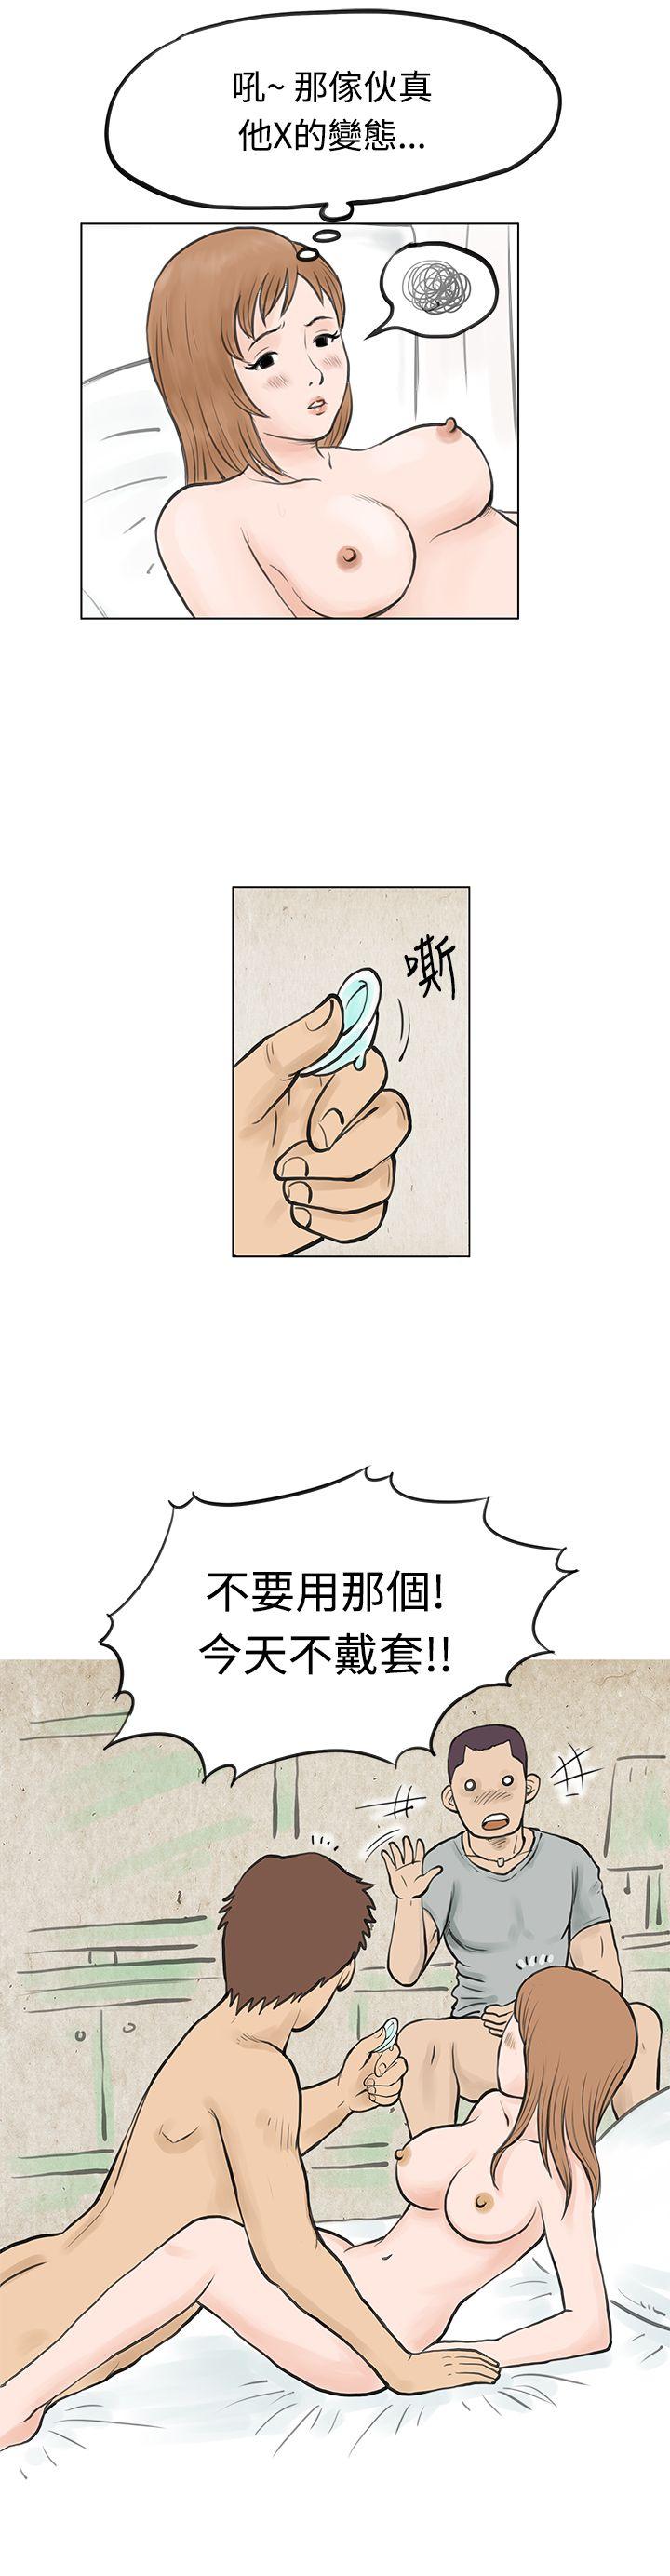 秘密Story  男友说要叫应召男(上) 漫画图片16.jpg